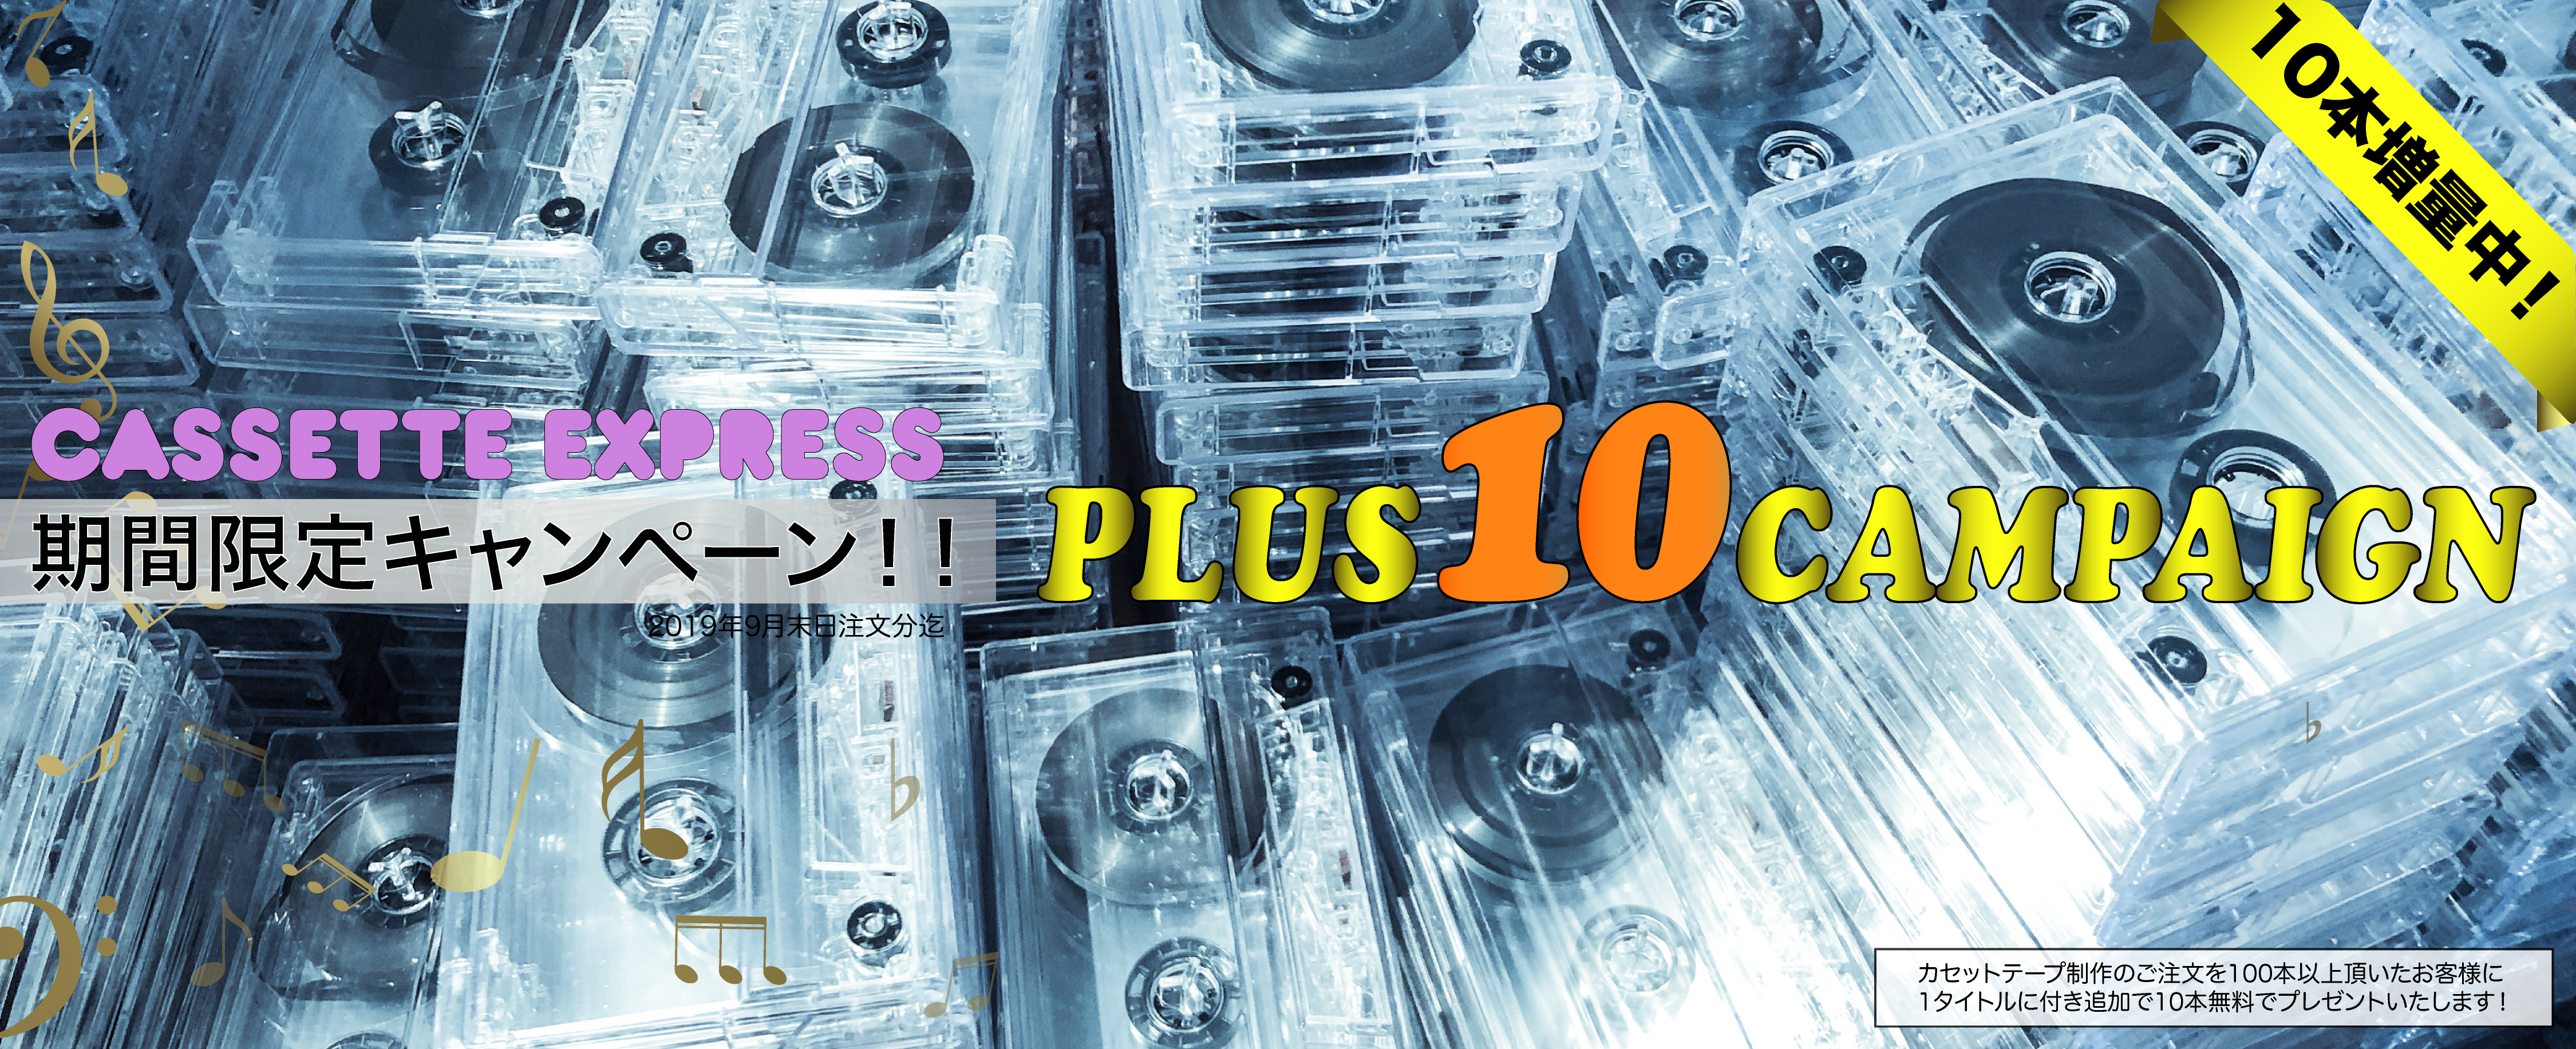 カセットテープ10本増量キャンペーン | CASSETTE-EXPRESS